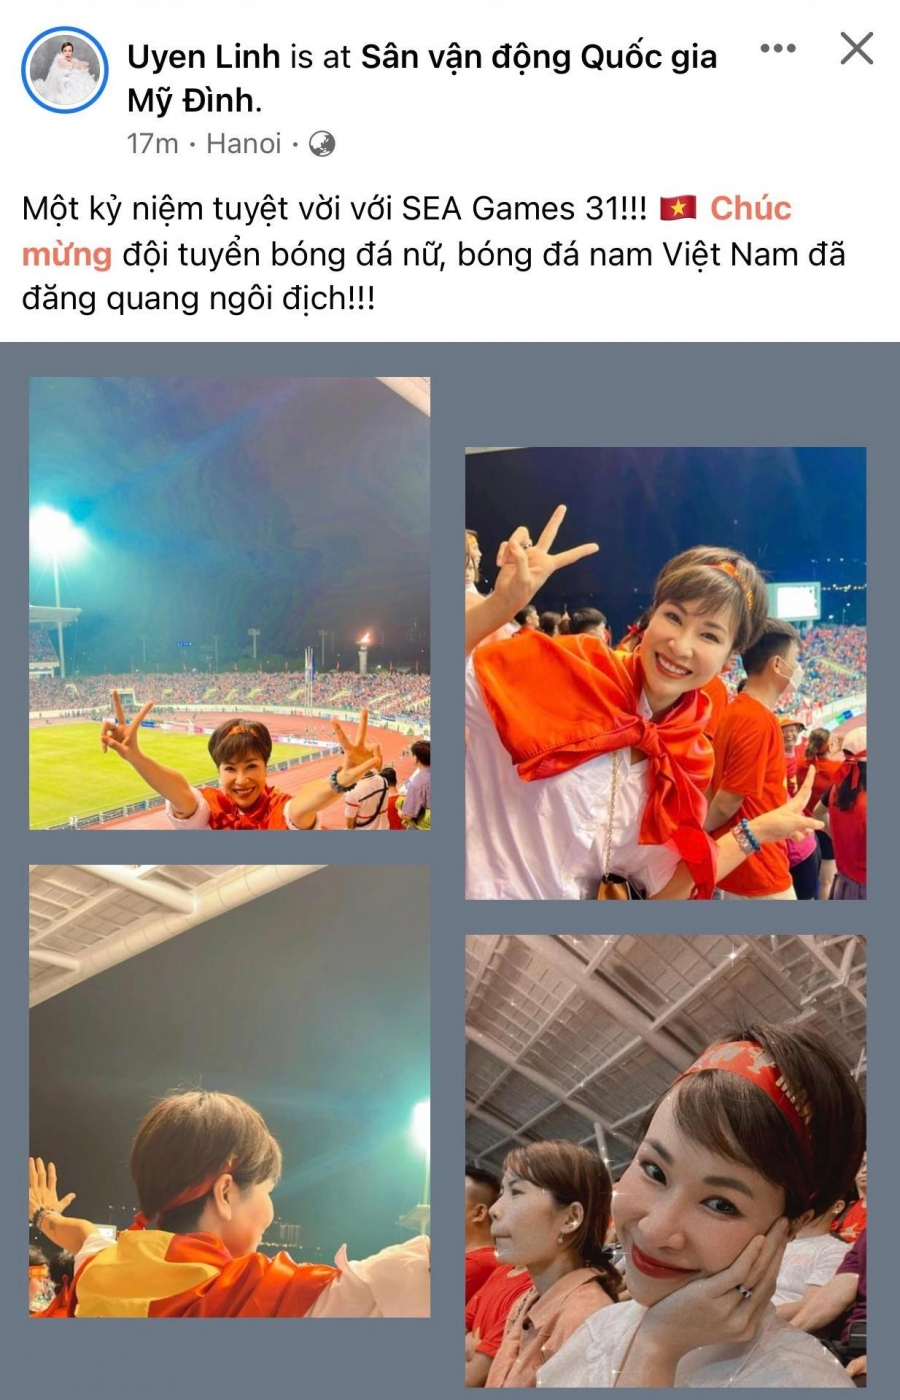 Uyên Linh xúc động trước chiến thắng của U23 Việt Nam: 'Một kỷ niệm tuyệt vời với SEA Games 31!!! Chúc mừng đội tuyển bóng đá nữ, bóng đá nam Việt Nam đã đăng quang ngôi địch!!!'